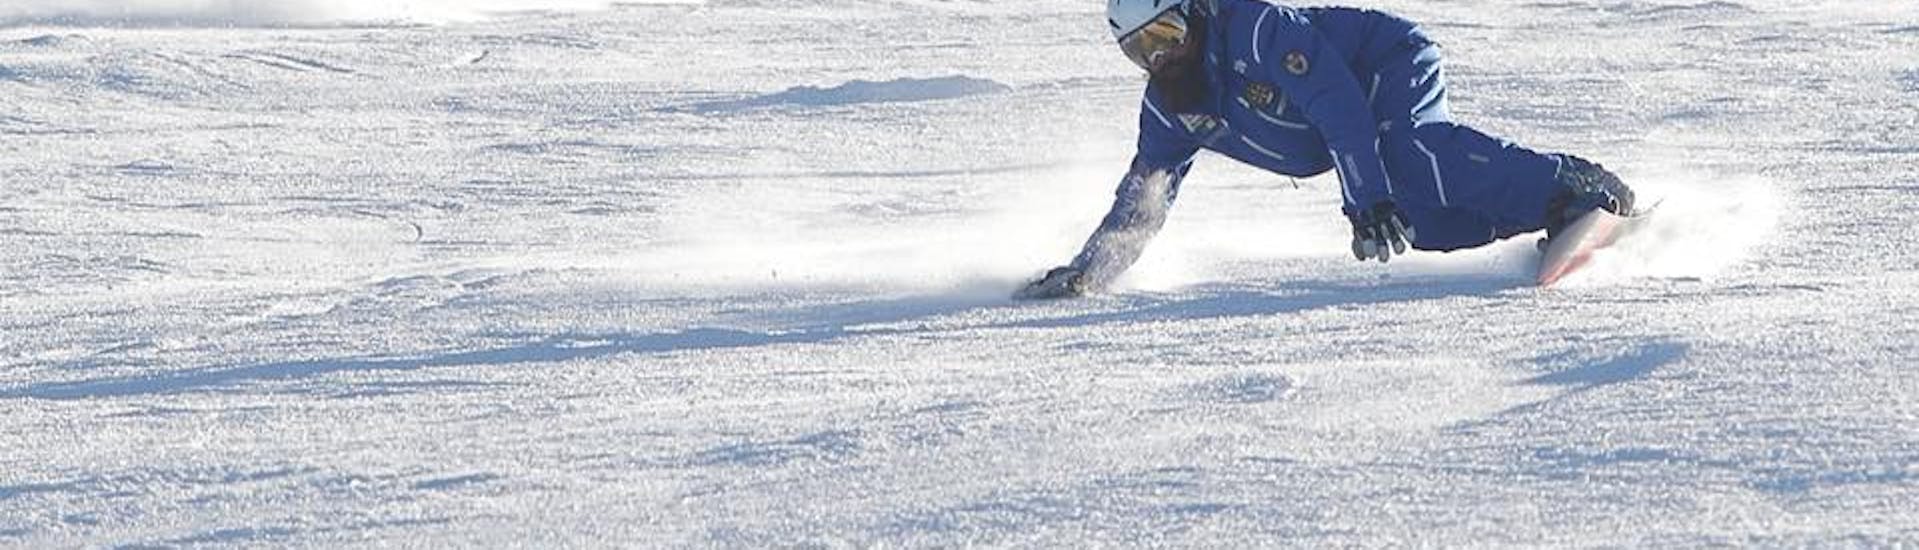 Formation de moniteur de snowboard sur les pistes d'Andalo avant l'un des cours particuliers de snowboard pour enfants et adultes de tous niveaux.